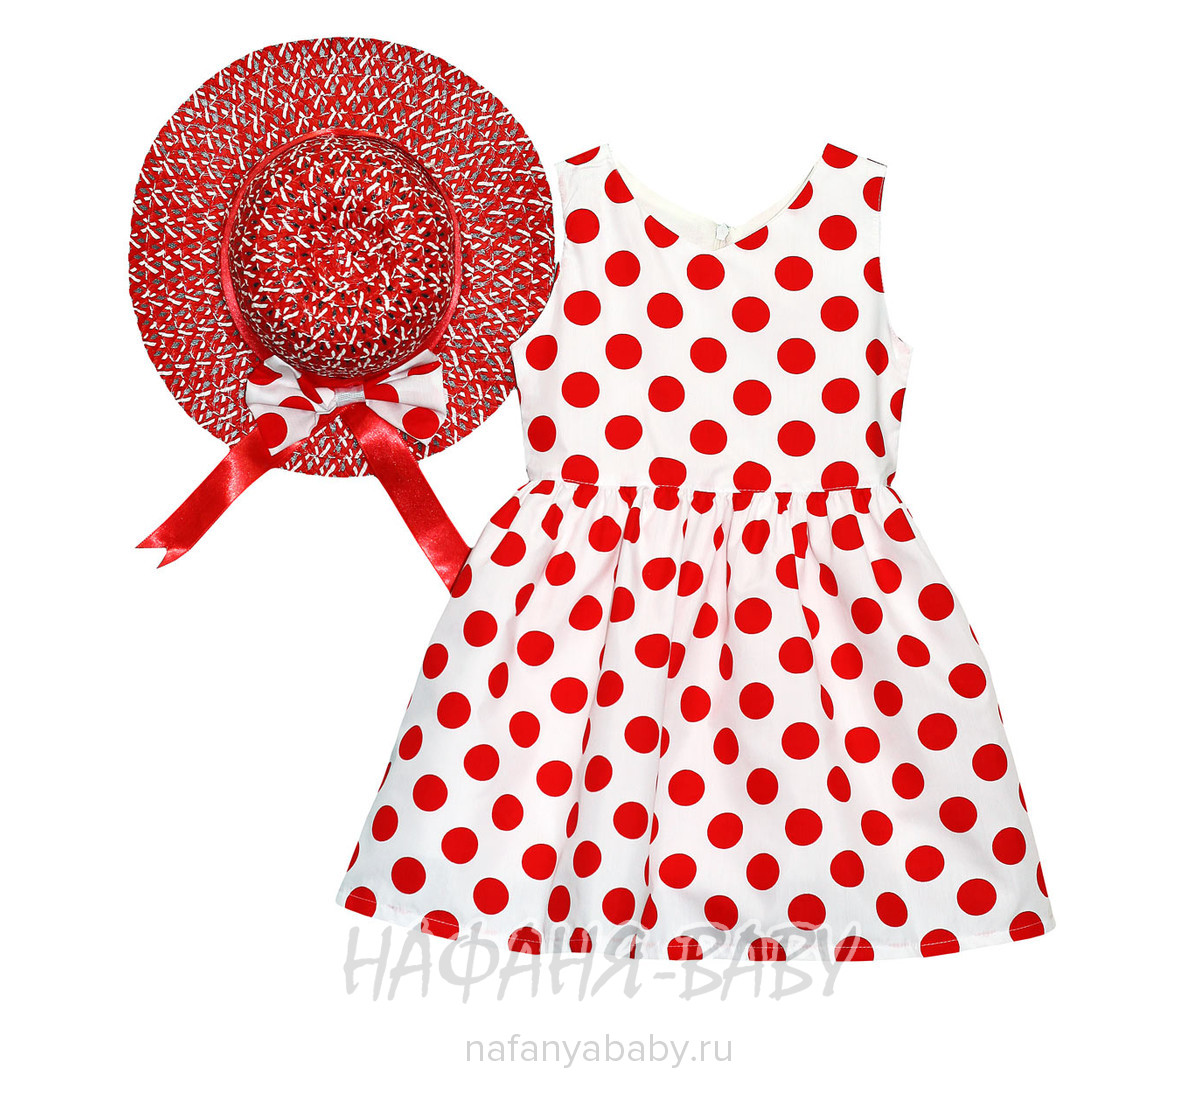 Детское платье + шляпка Miss SERENITY, купить в интернет магазине Нафаня. арт: 2020.